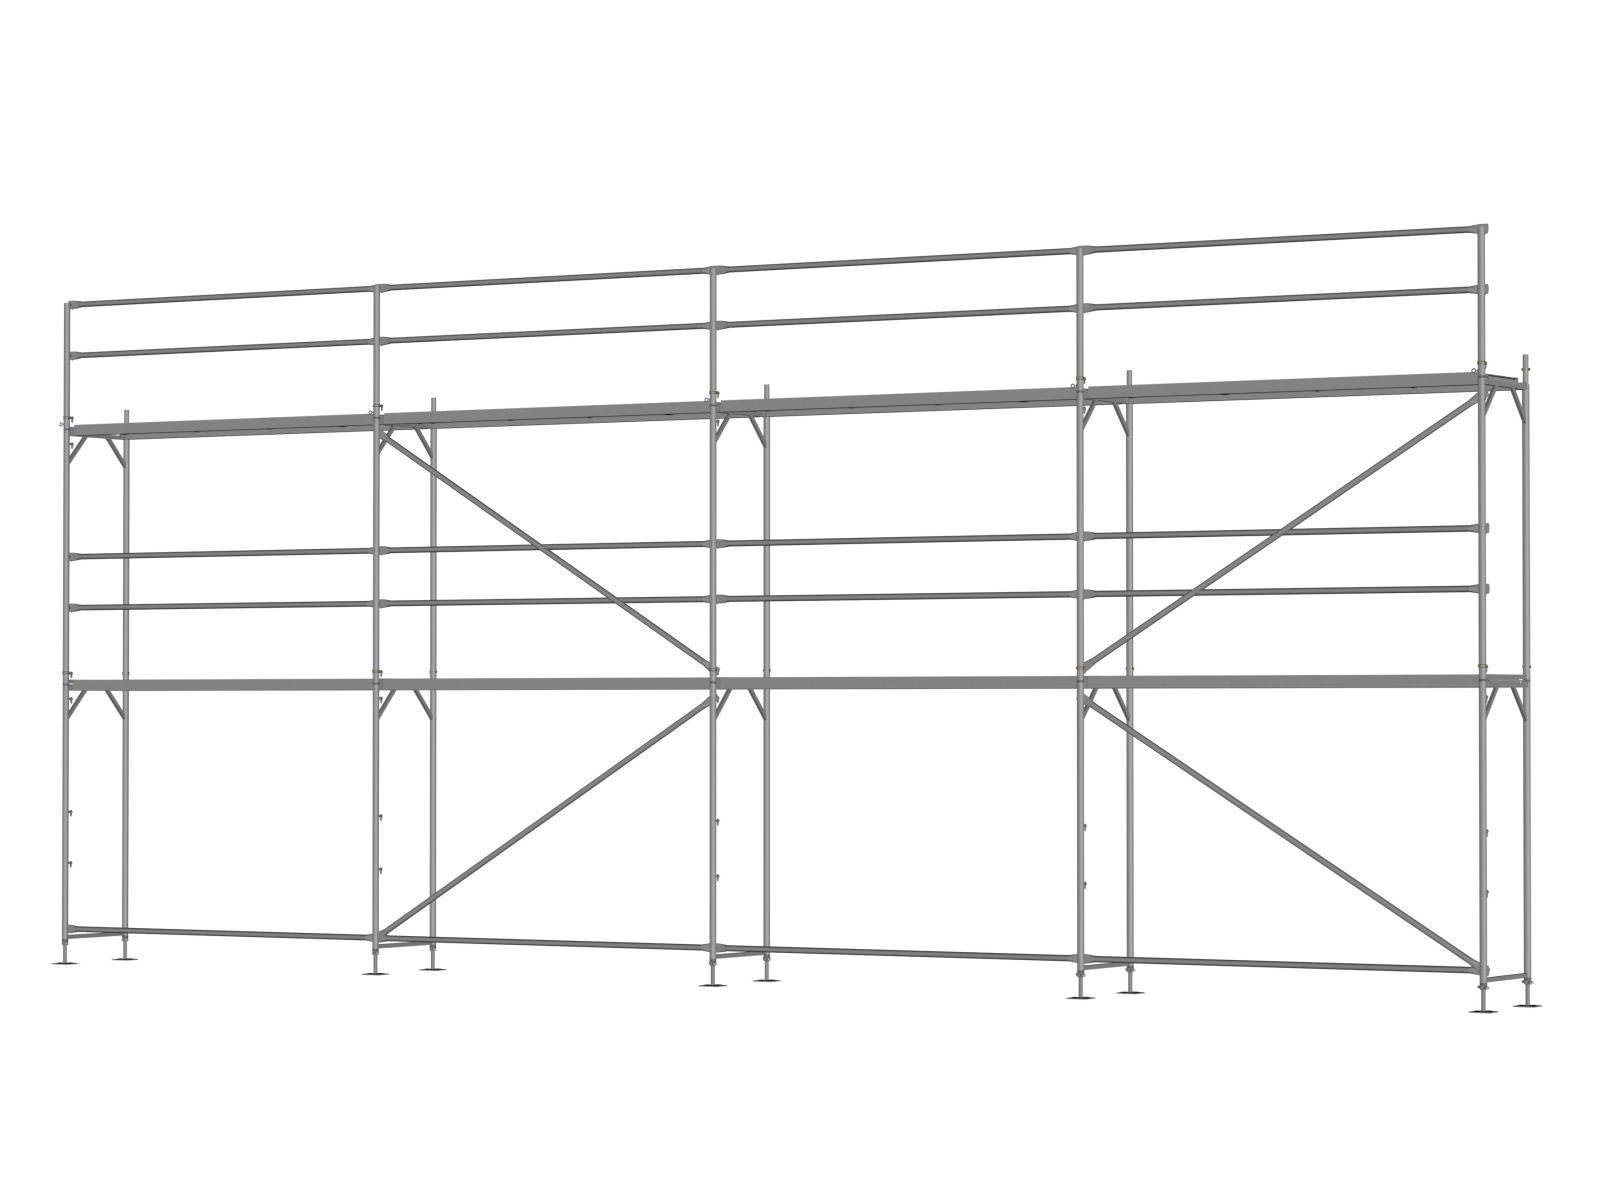 Stahl Traufseitengerüst 72 m² - 3,0 m Felder - 12 m lang - 6 m Arbeitshöhe - Basis-Gerüst